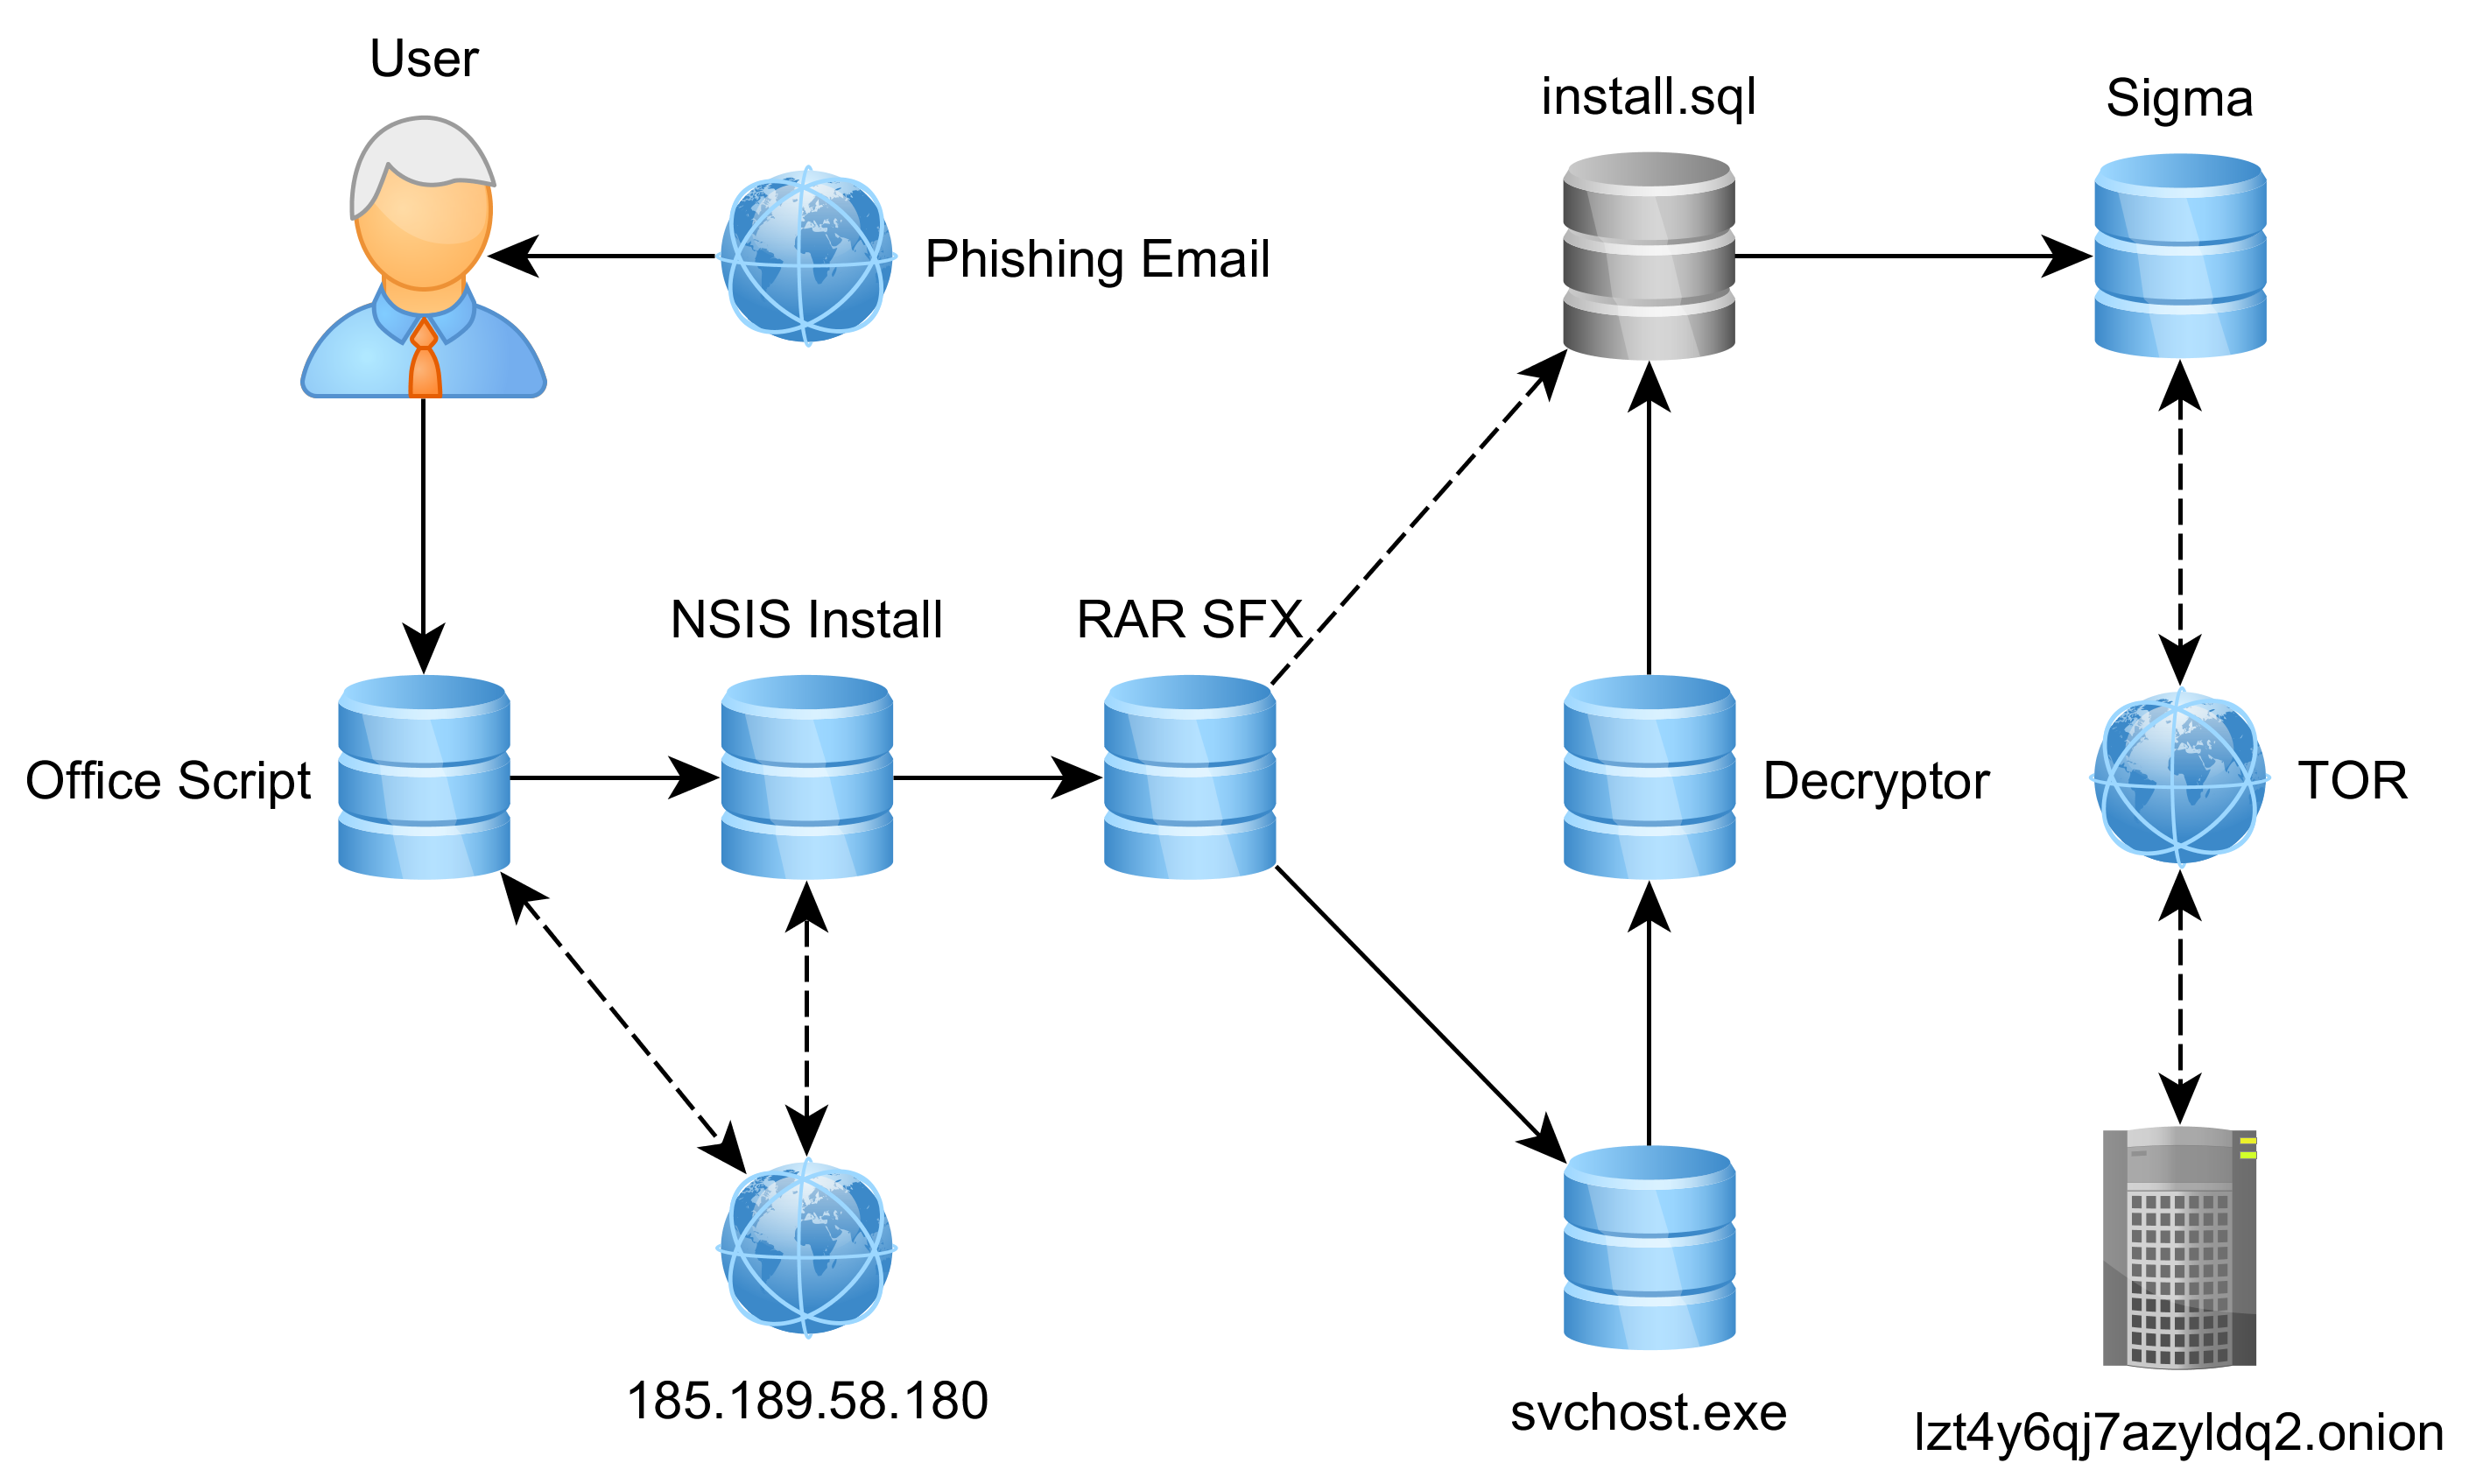 Funções do ransomware Sigma